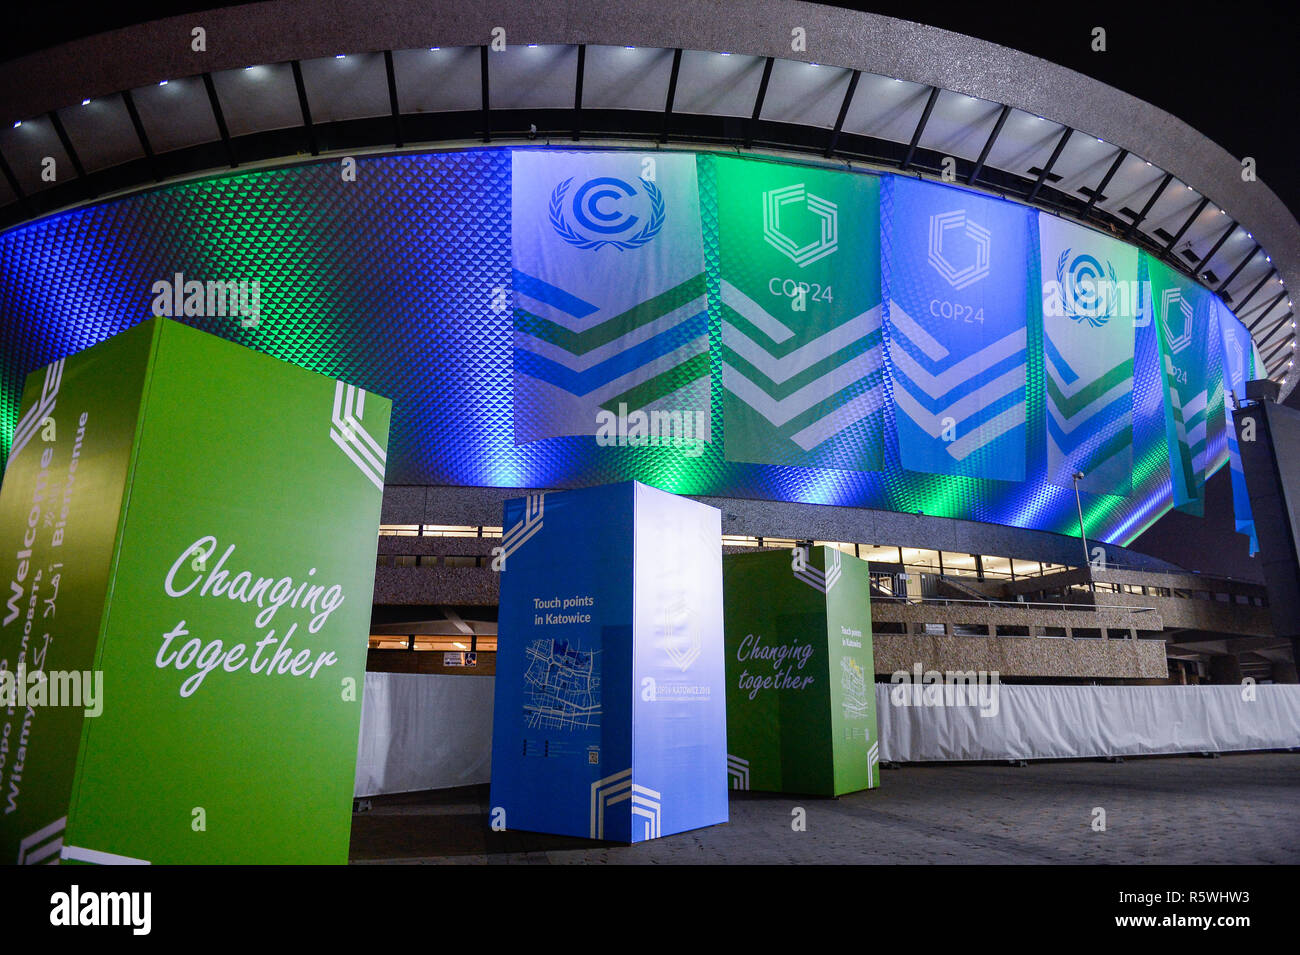 UN-COP 24 Flags werden gesehen, hängen an der Spodek Arena Complex während der UN-Klimakonferenz COP 24 2018. Die 2018 Klimakonferenz der Vereinten Nationen wird zwischen 3. bis 14. in Katowice, Polen statt. Stockfoto